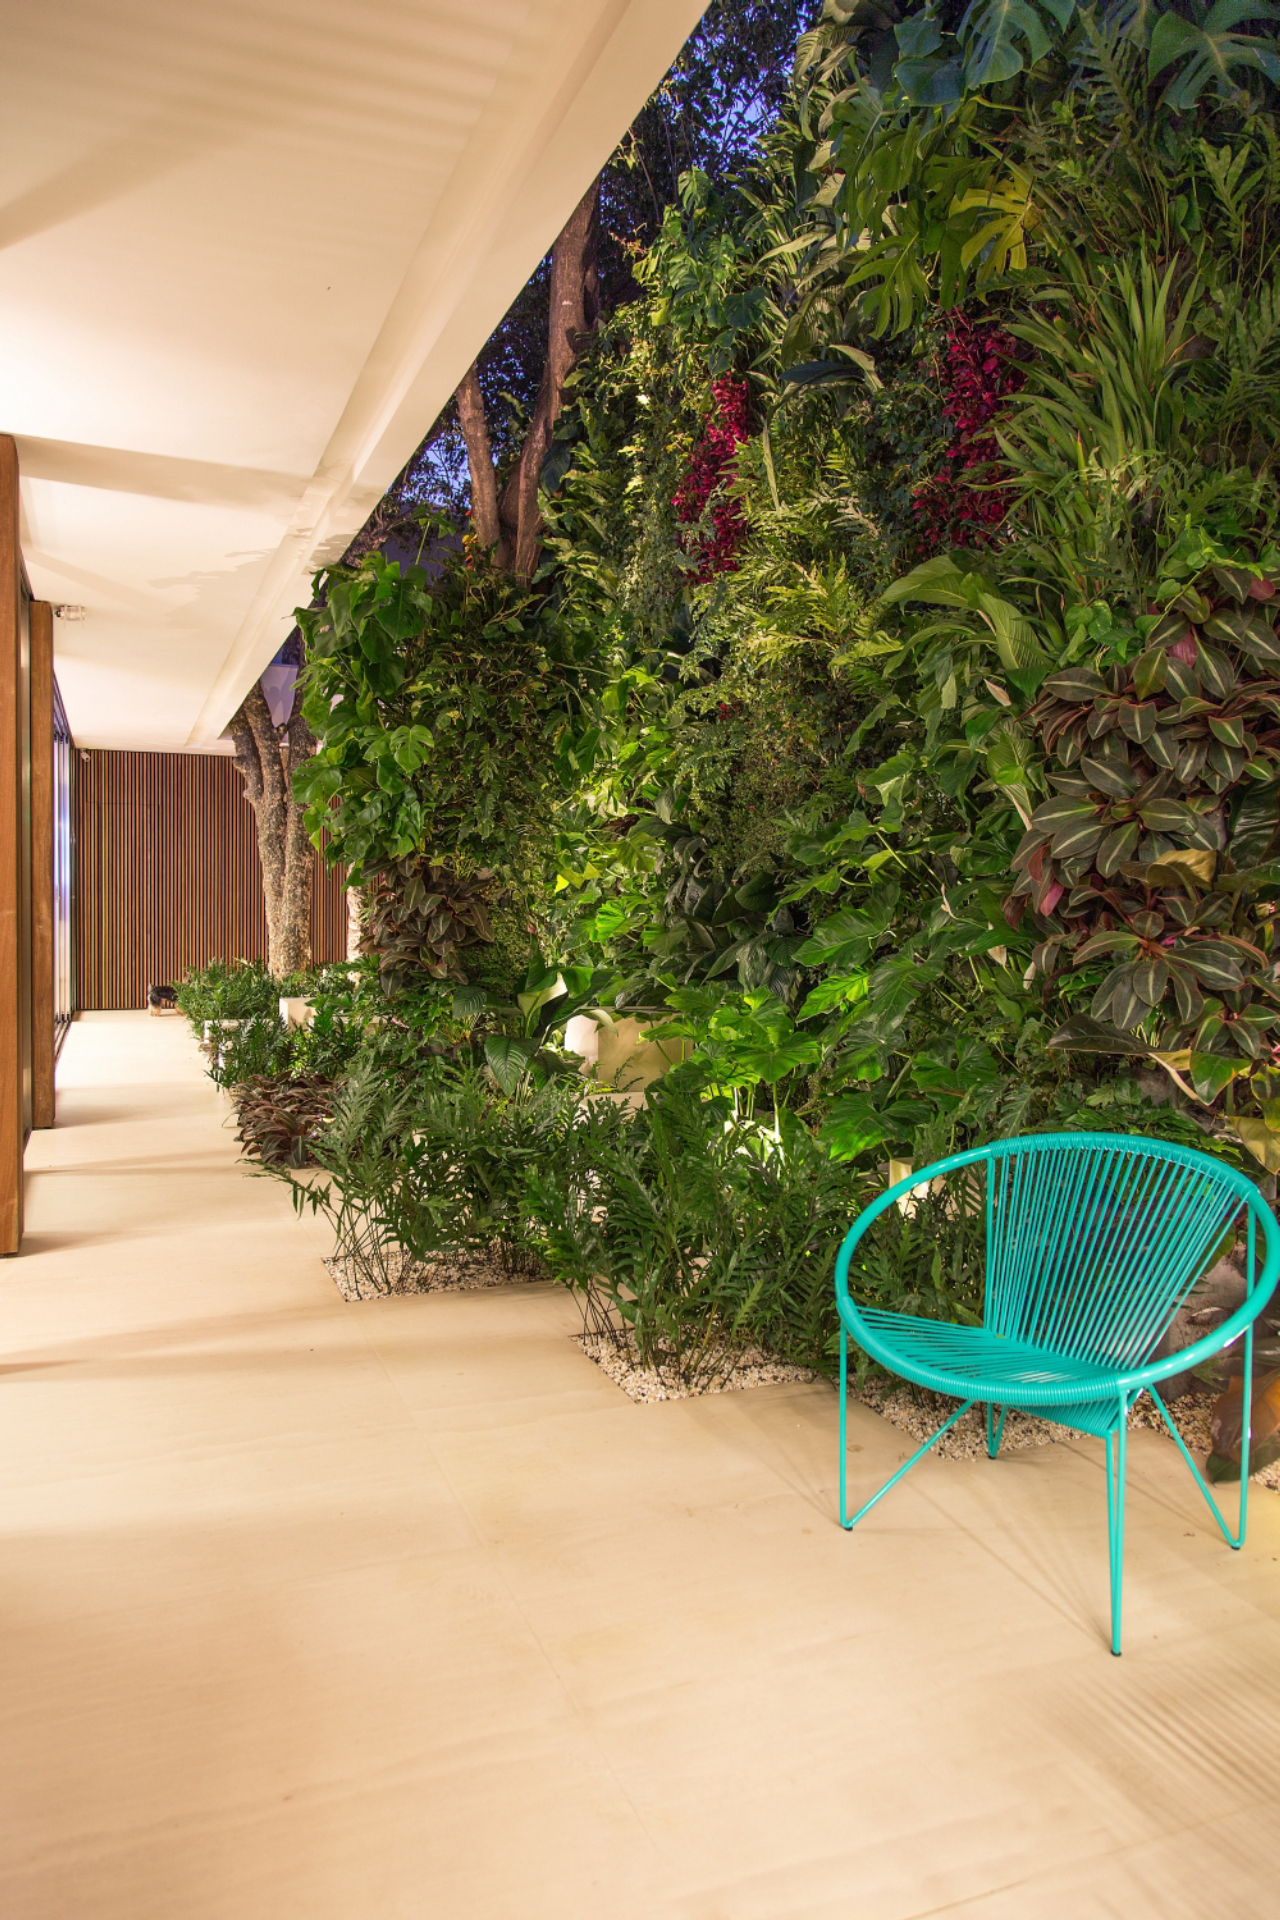 Jardim vertical, que também funciona como jardim de inverno, criado pelo paisagista Alex Hanazaki para um escritório de São Paulo: vegetação rasteira em meio a blocos de limestone e parede com samambaias jamaicanas, filodendros, entre outras.